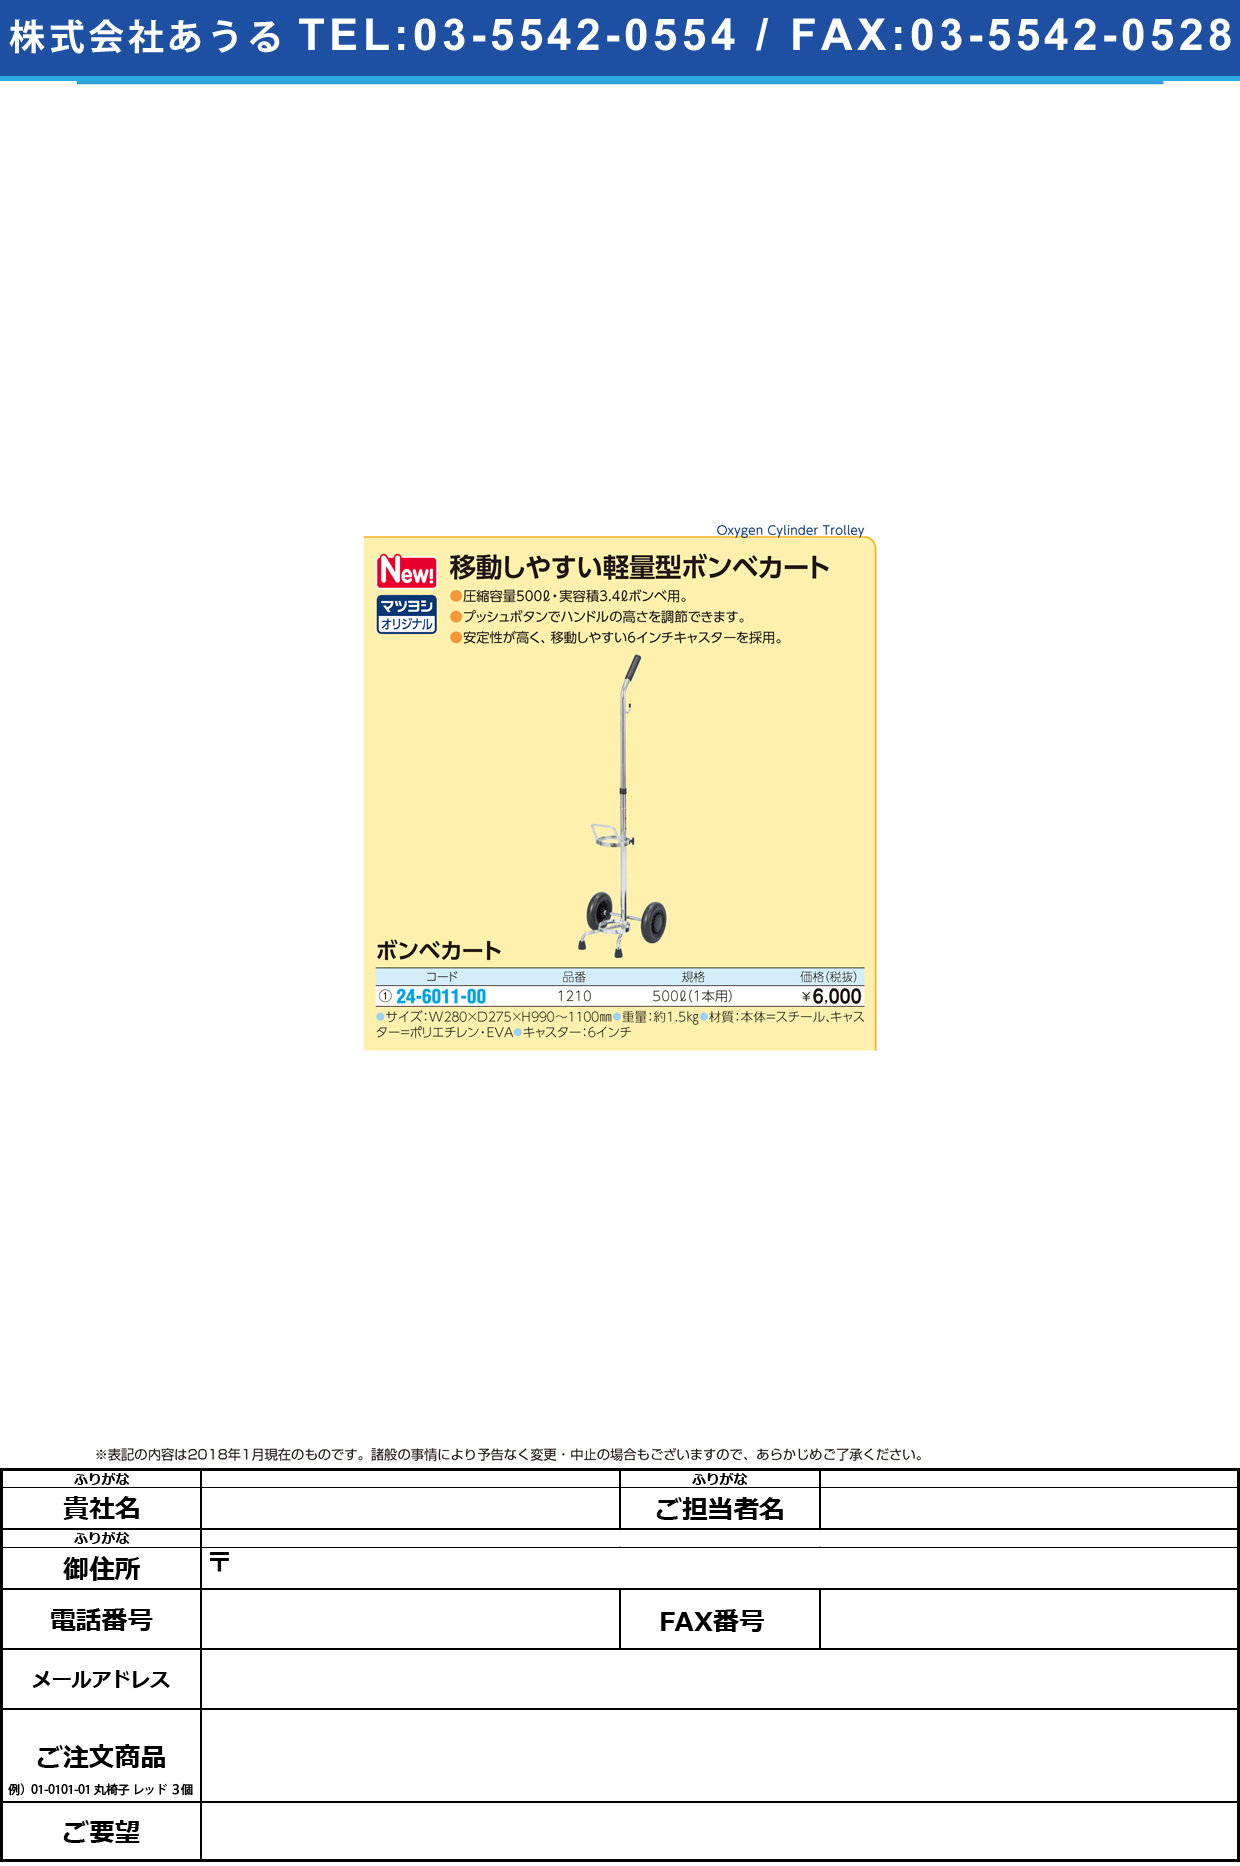 (24-6011-00)ボンベカート 1210 ﾎﾞﾝﾍﾞｶｰﾄ【1台単位】【2019年カタログ商品】